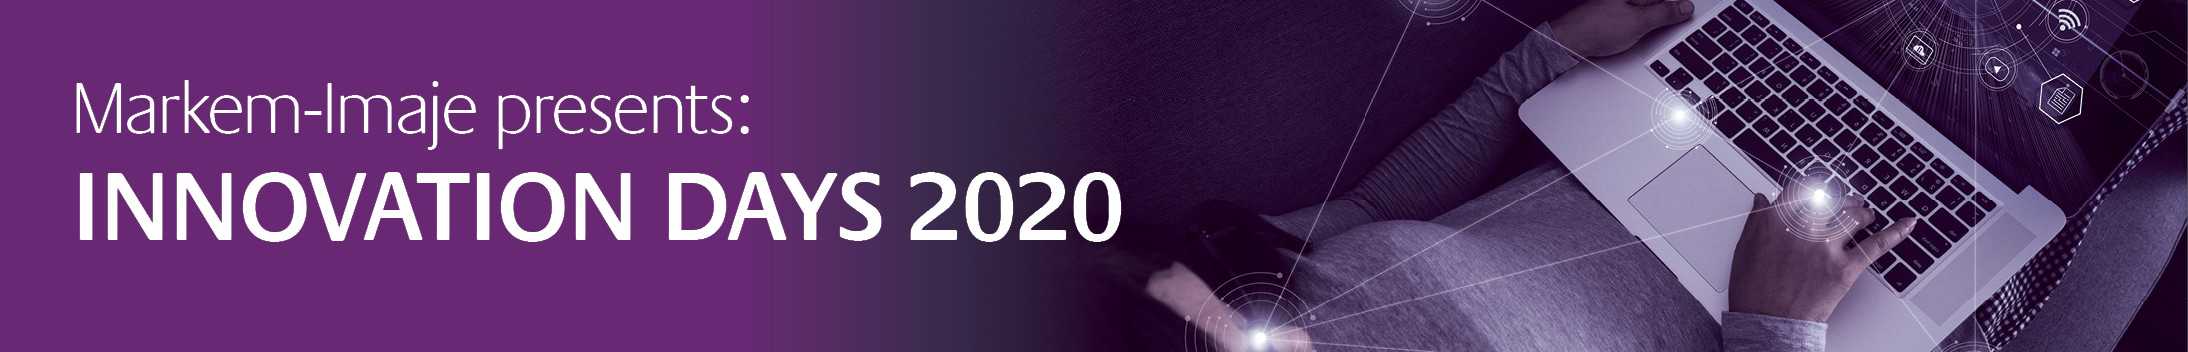 Innovative days 2020 by Markem Imaje